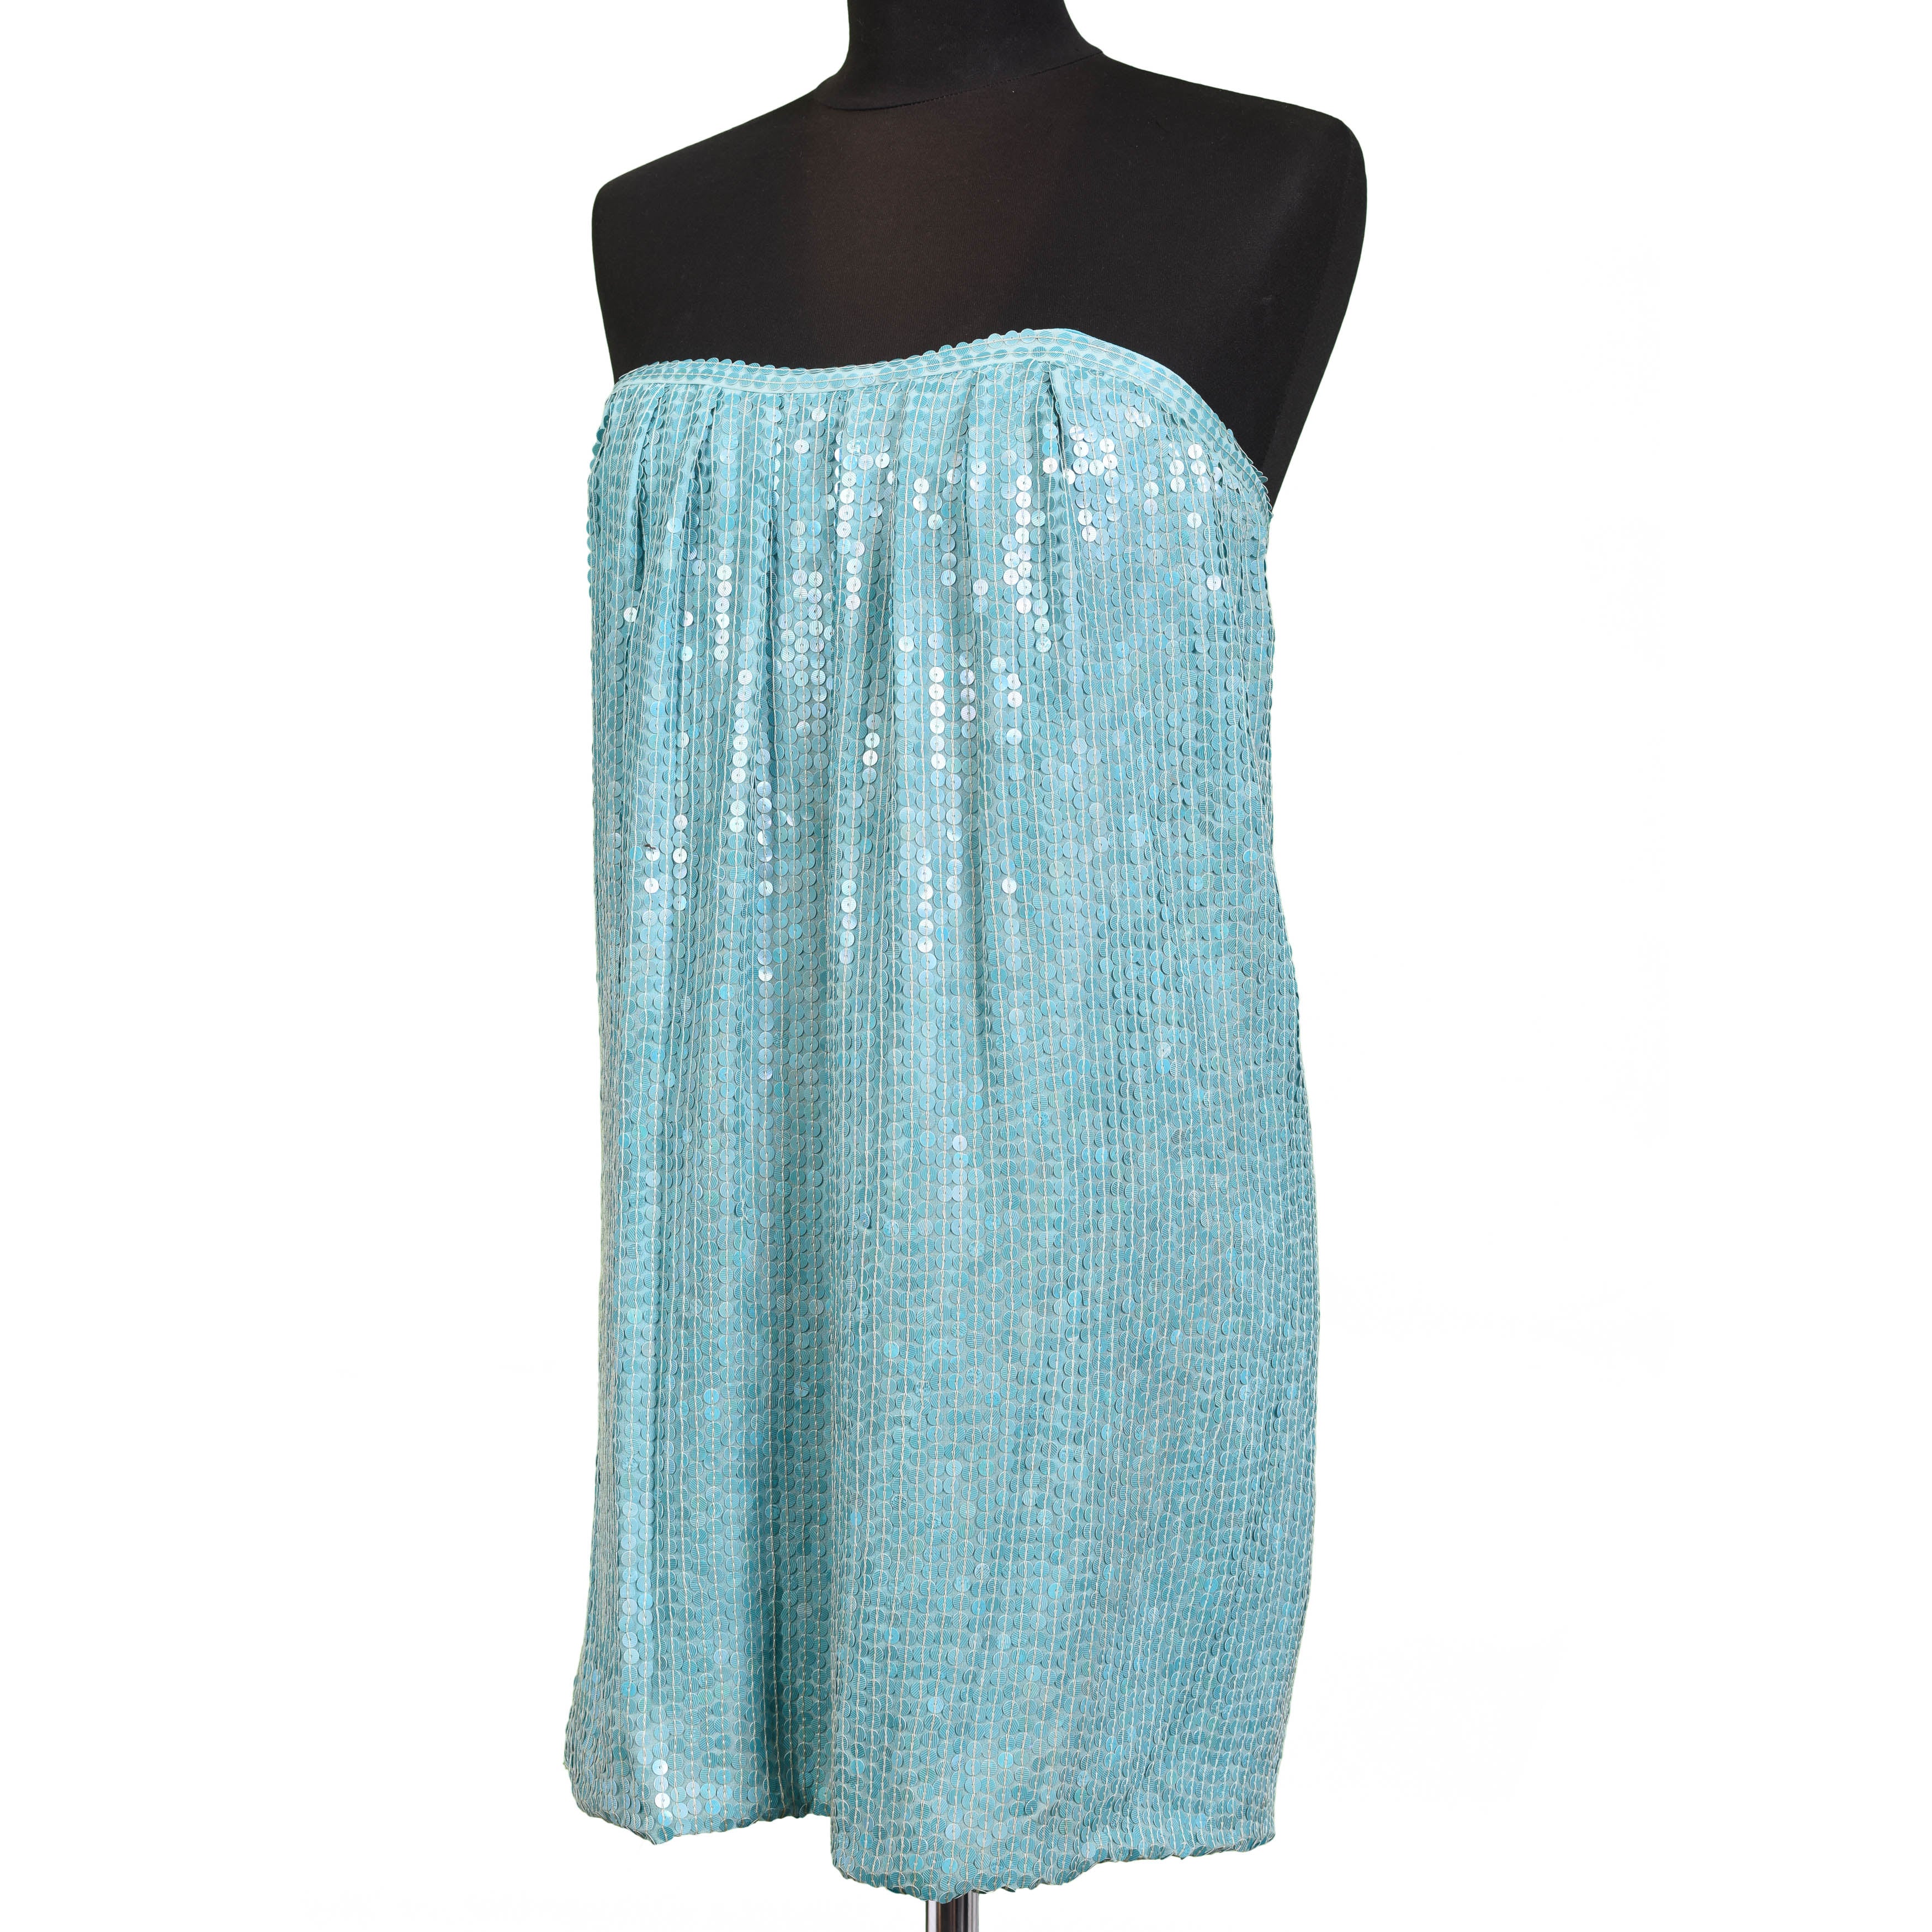 JAY AHR Paris Turquoise Blue Silk Sequin Bustier Cocktail Dress Size S / US 4 WOMEN'S BOUTIQUE